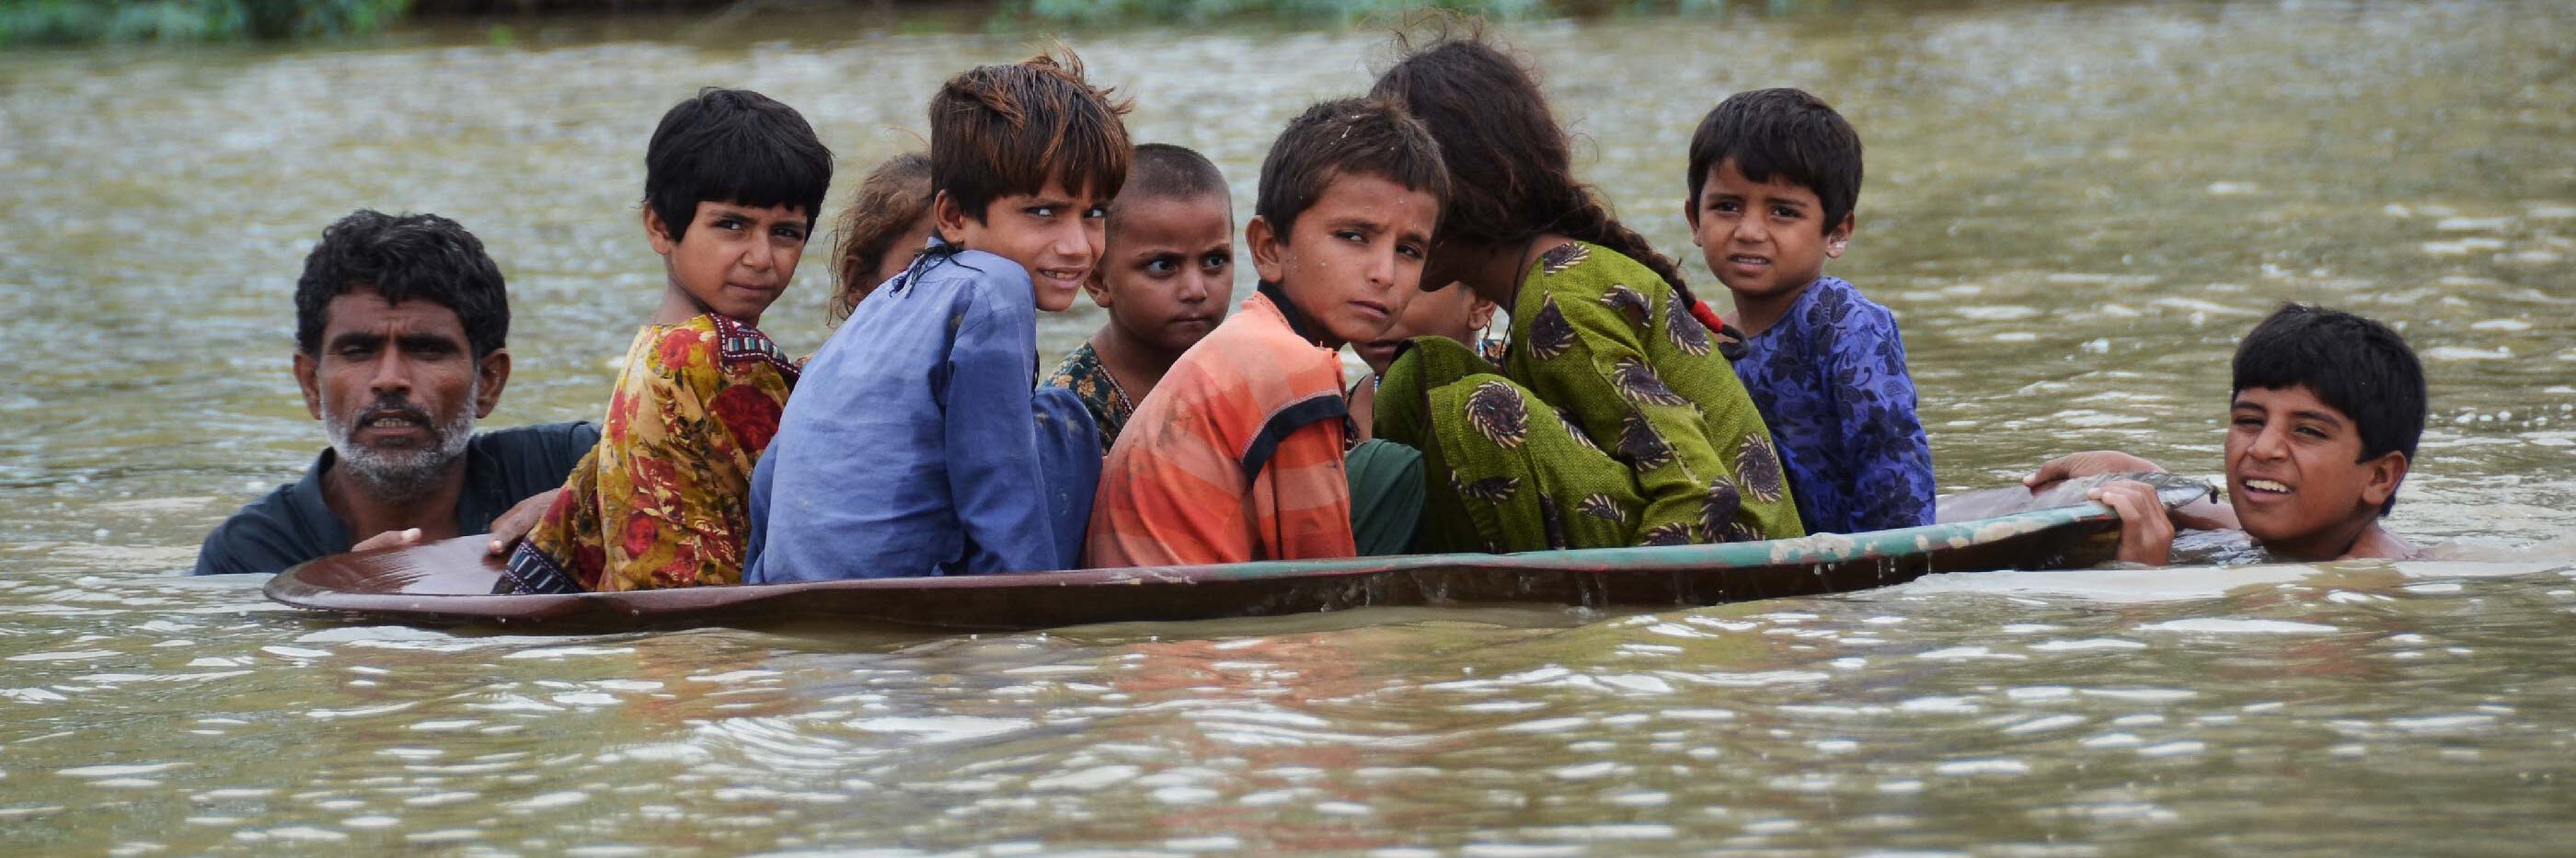 Kinder in einem Boot auf der Flucht der Überschwemmung in Pakistan